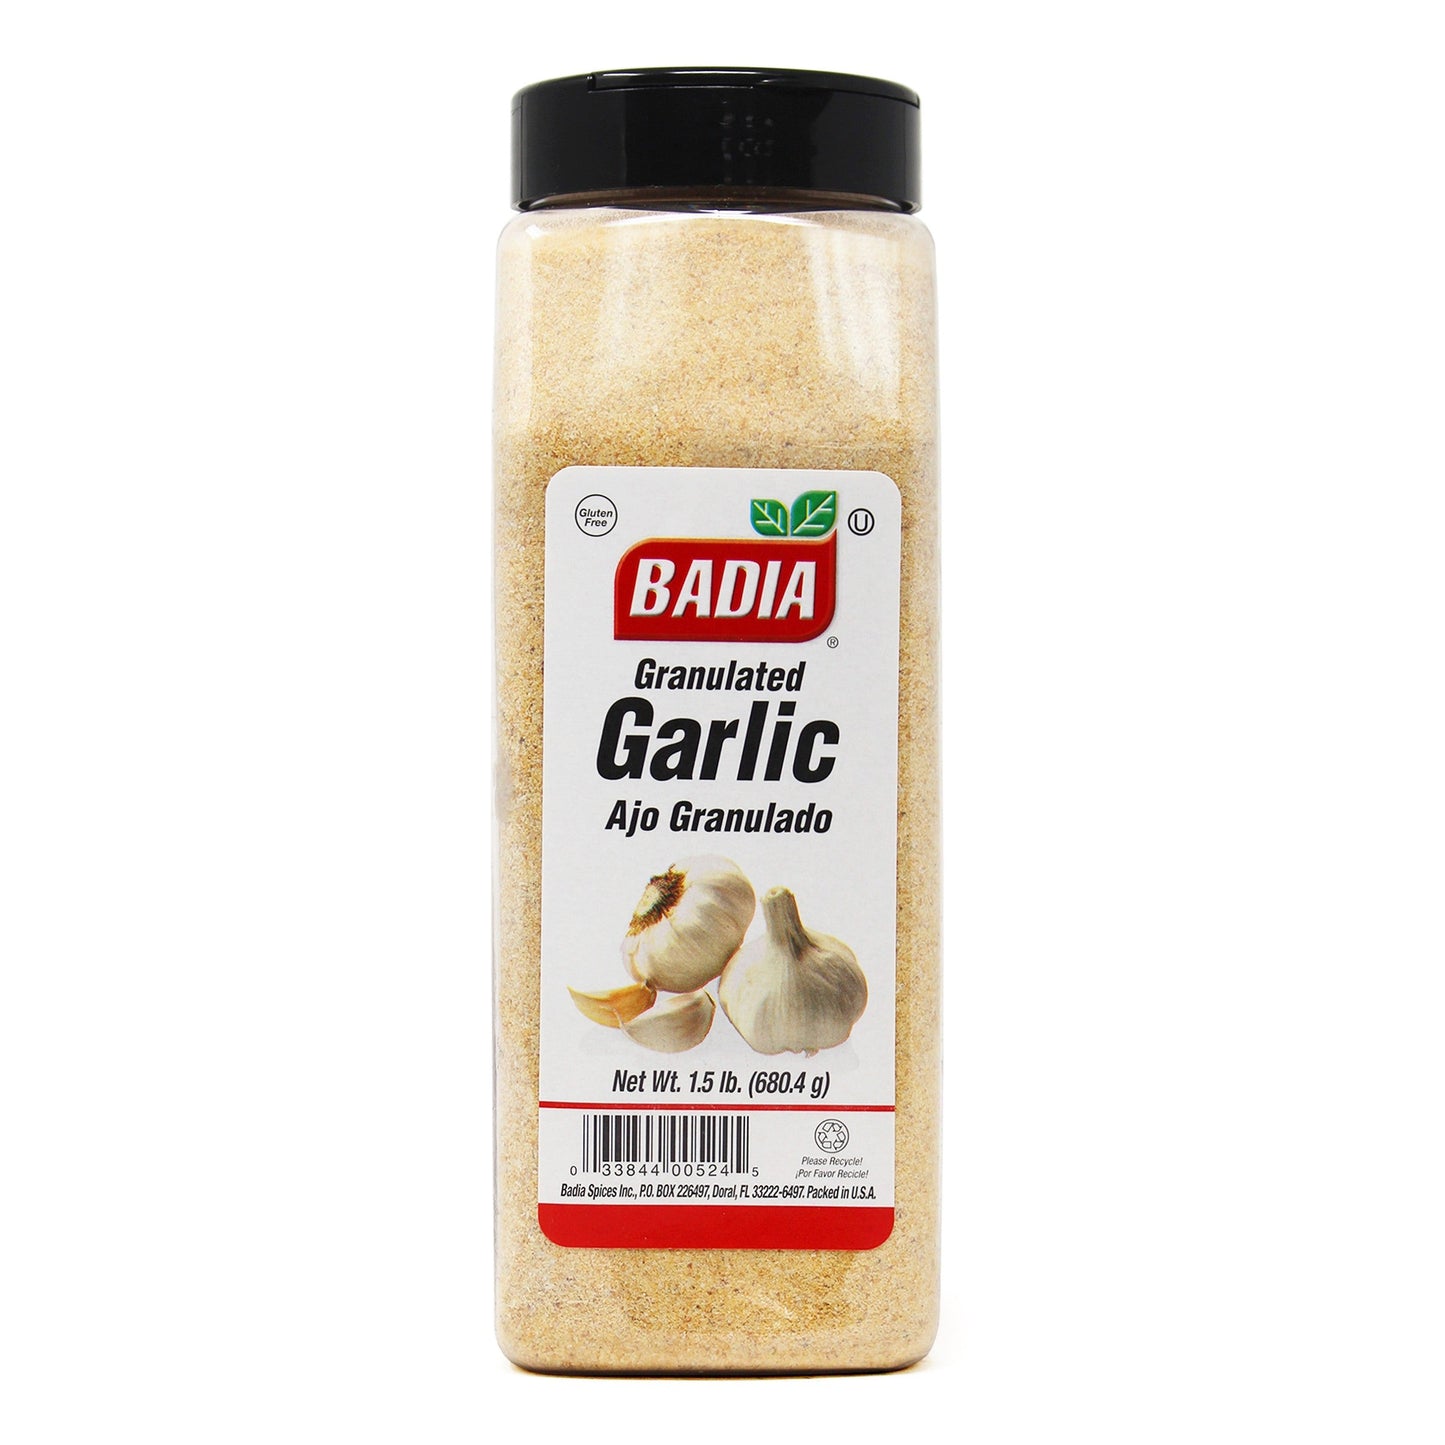 Badia Granulated Garlic 1.5lb 00524